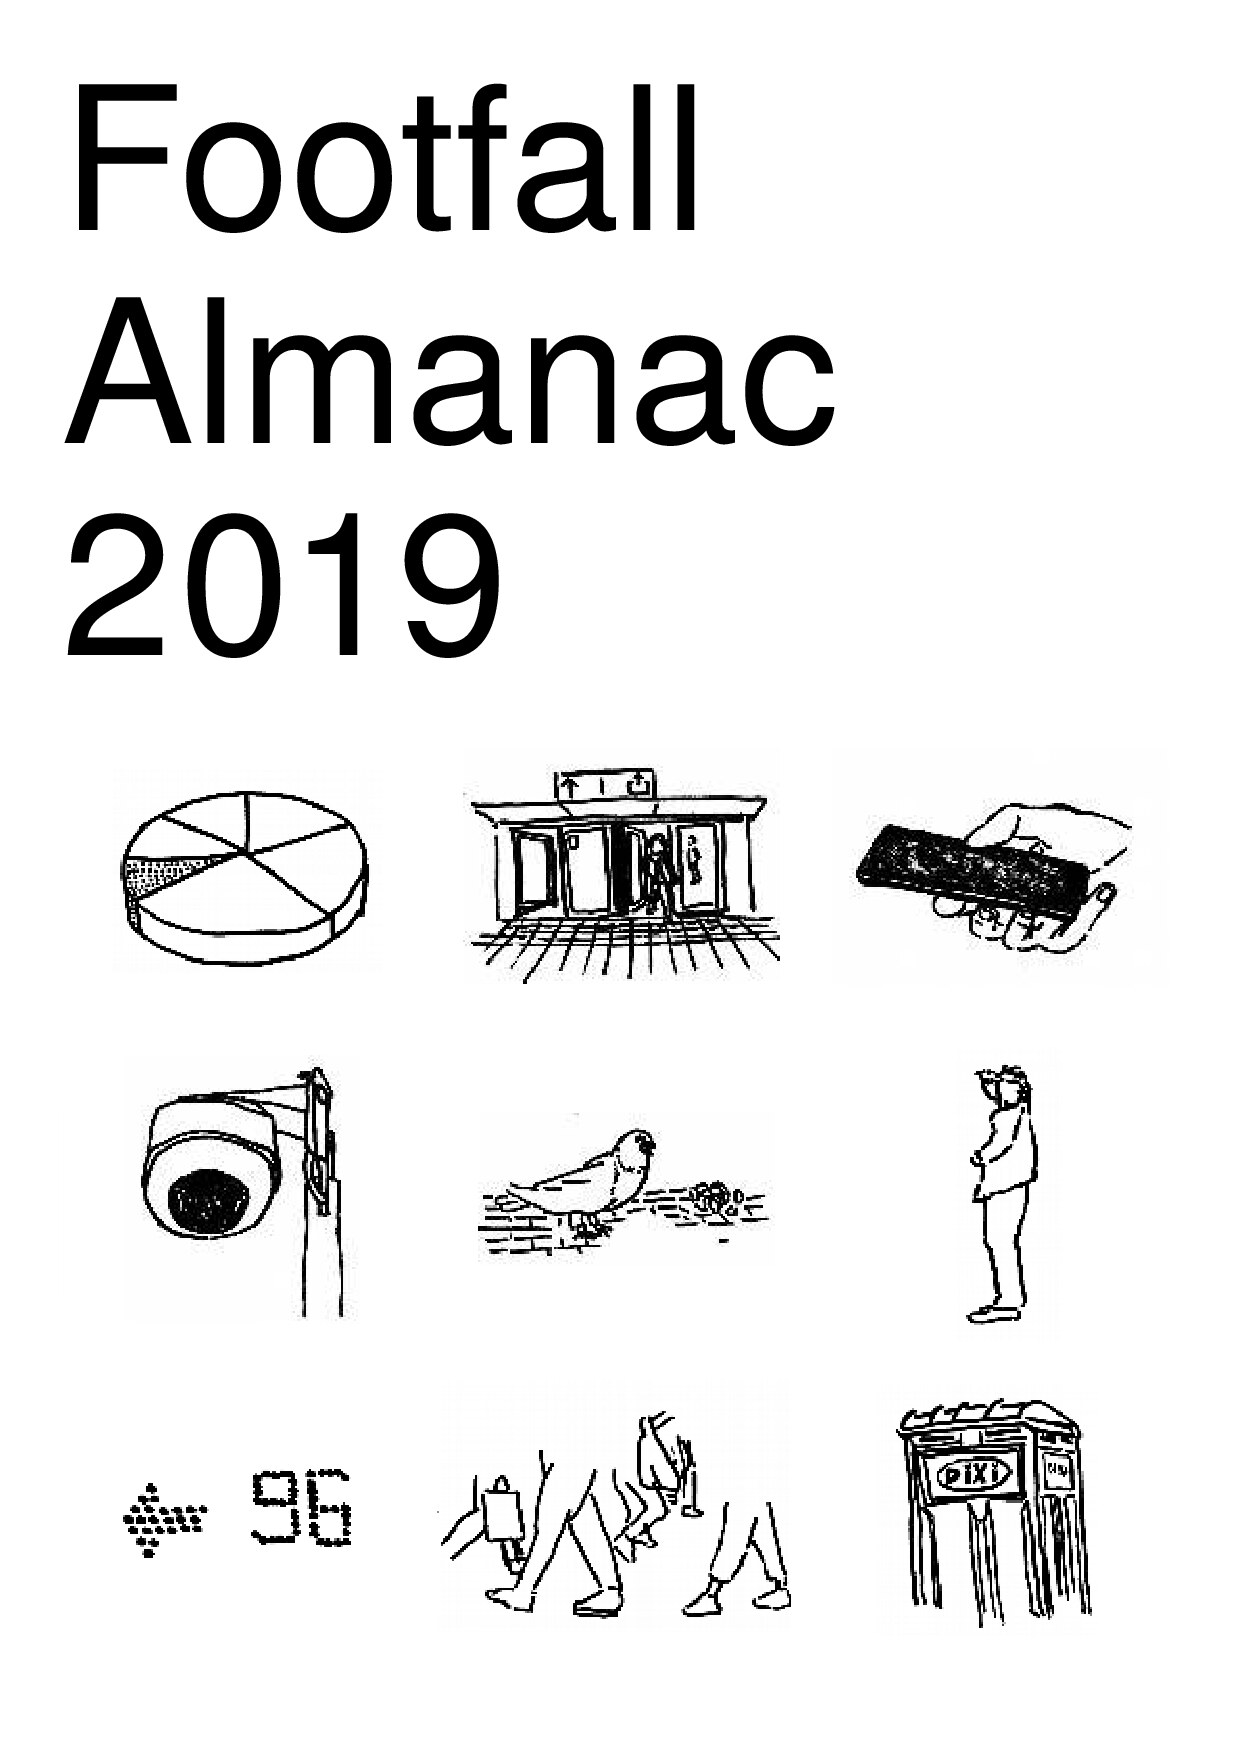 Footfall Almanac 2019 - Femke Snelting